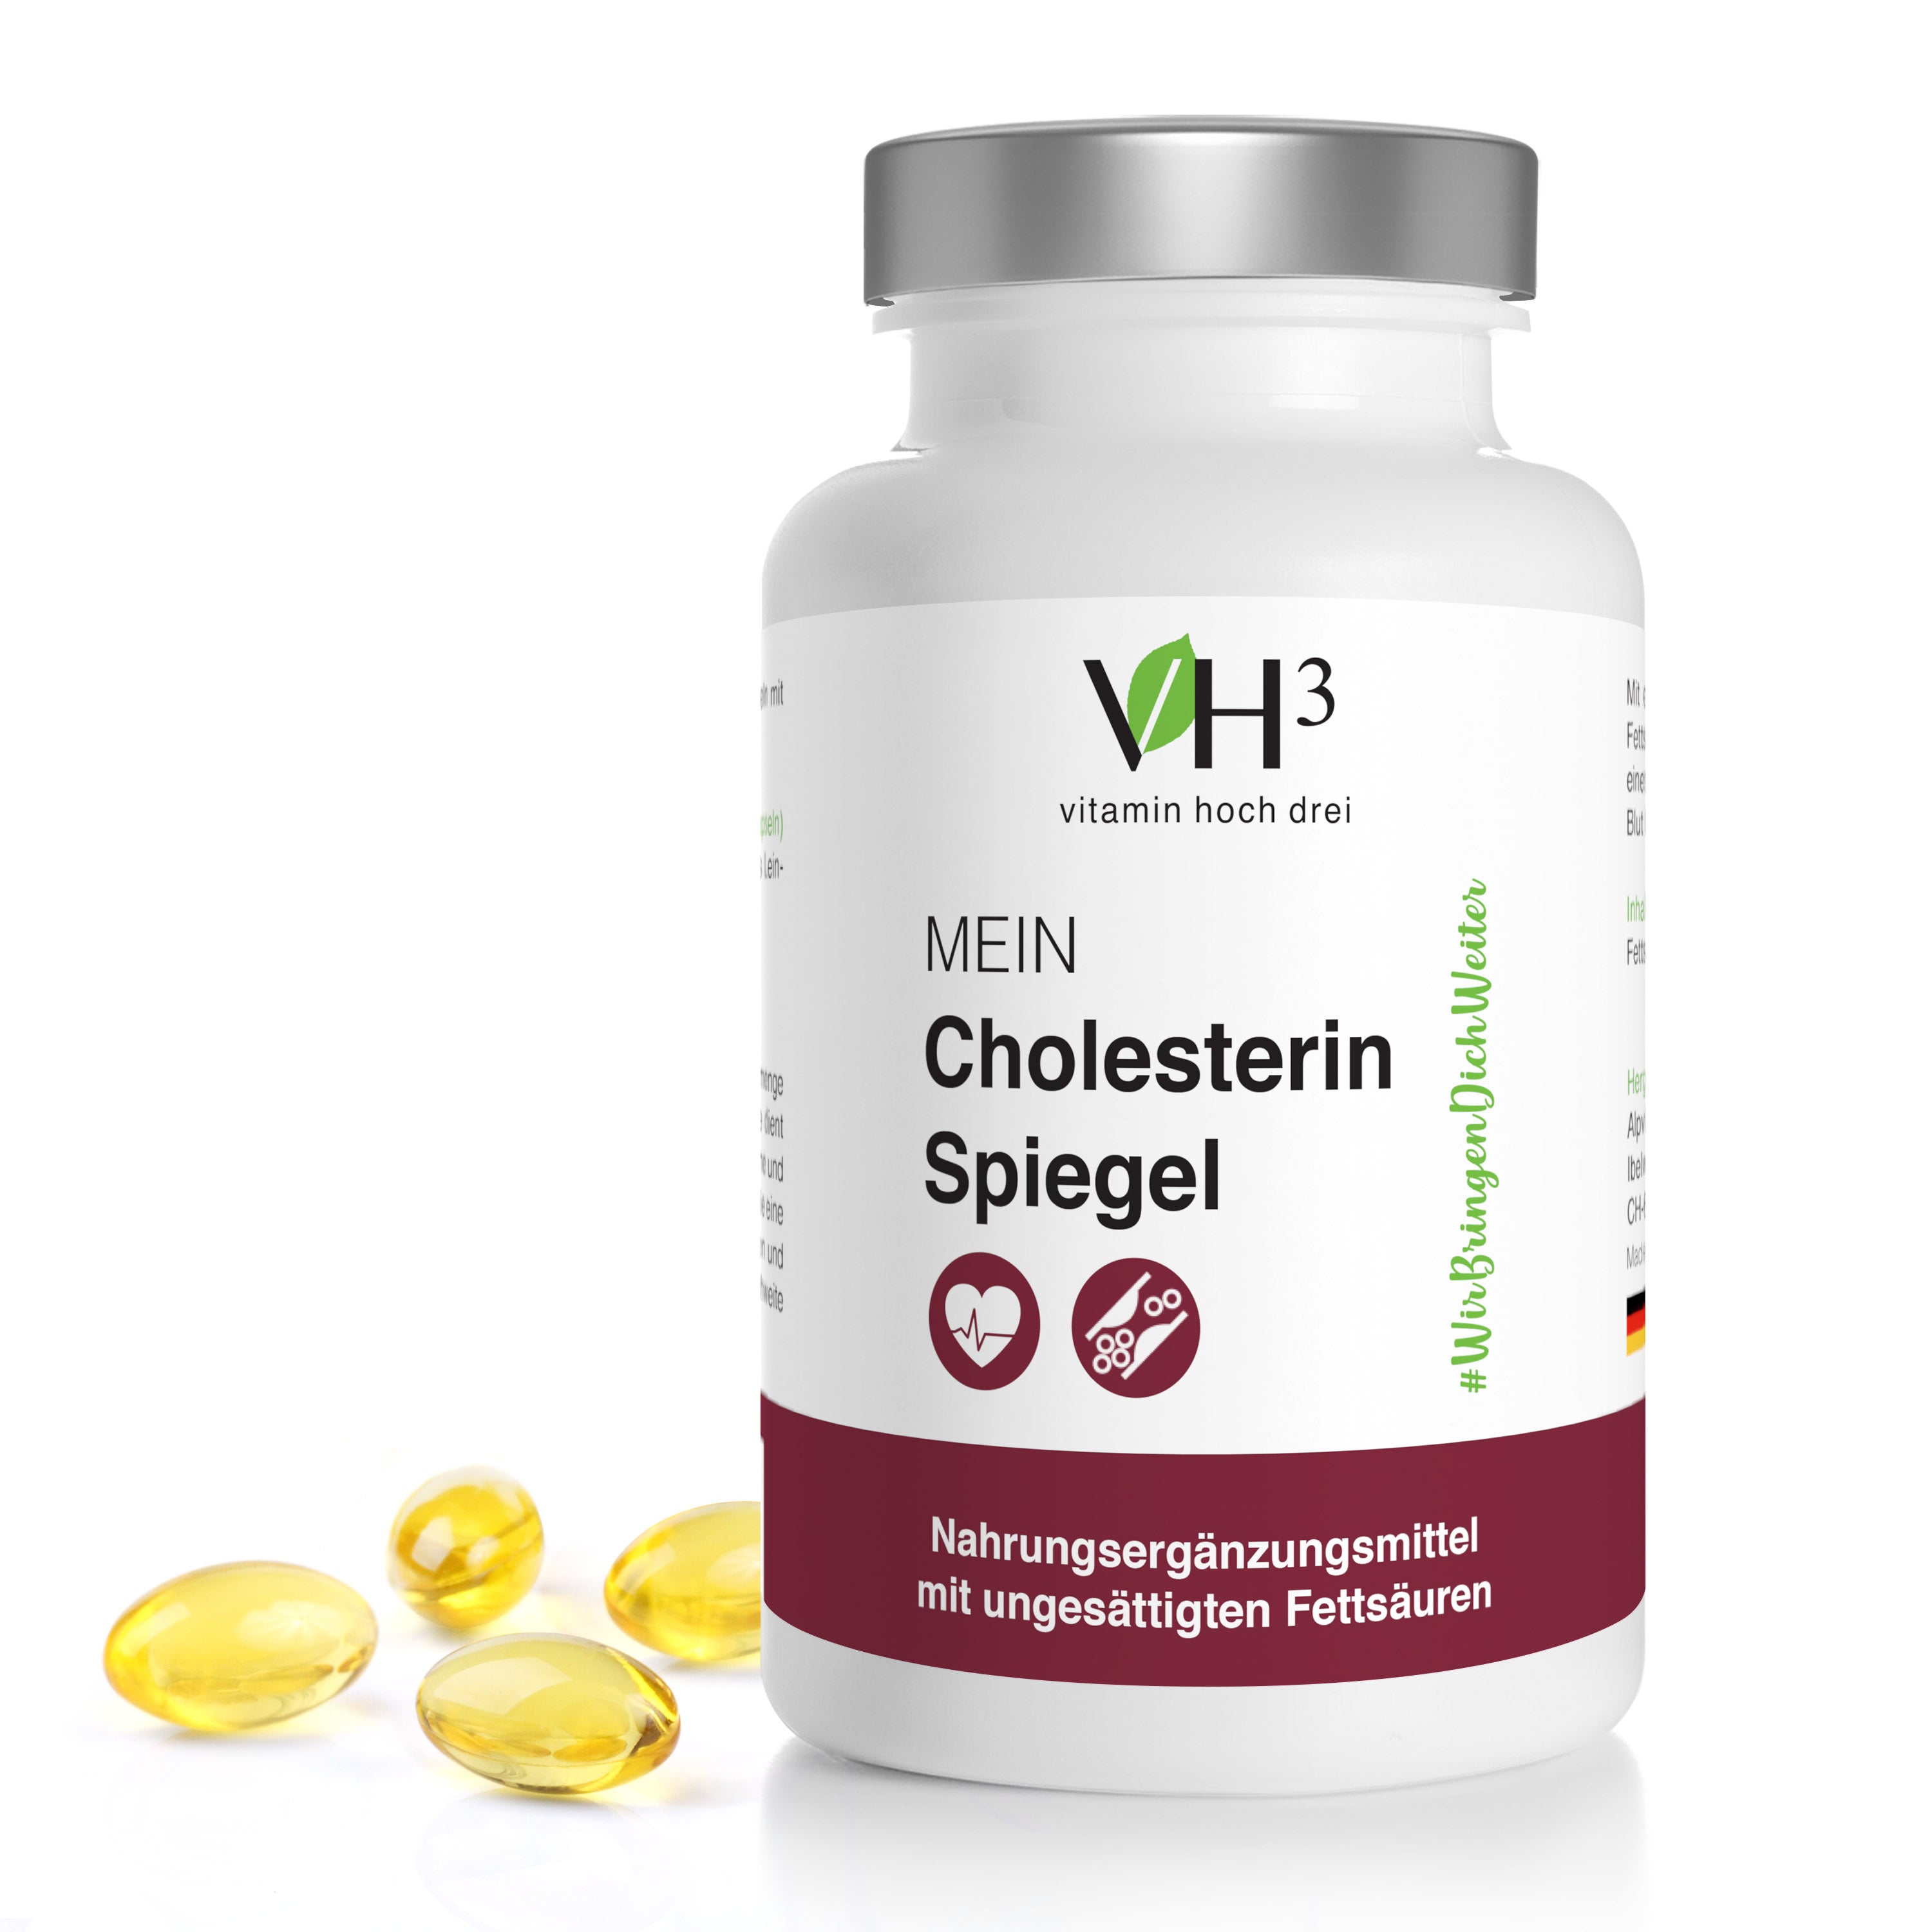 MEIN Cholesterin Spiegel mit Beta Glucan, Oleuropein, Acerola Extrakt und Amaranthmehl